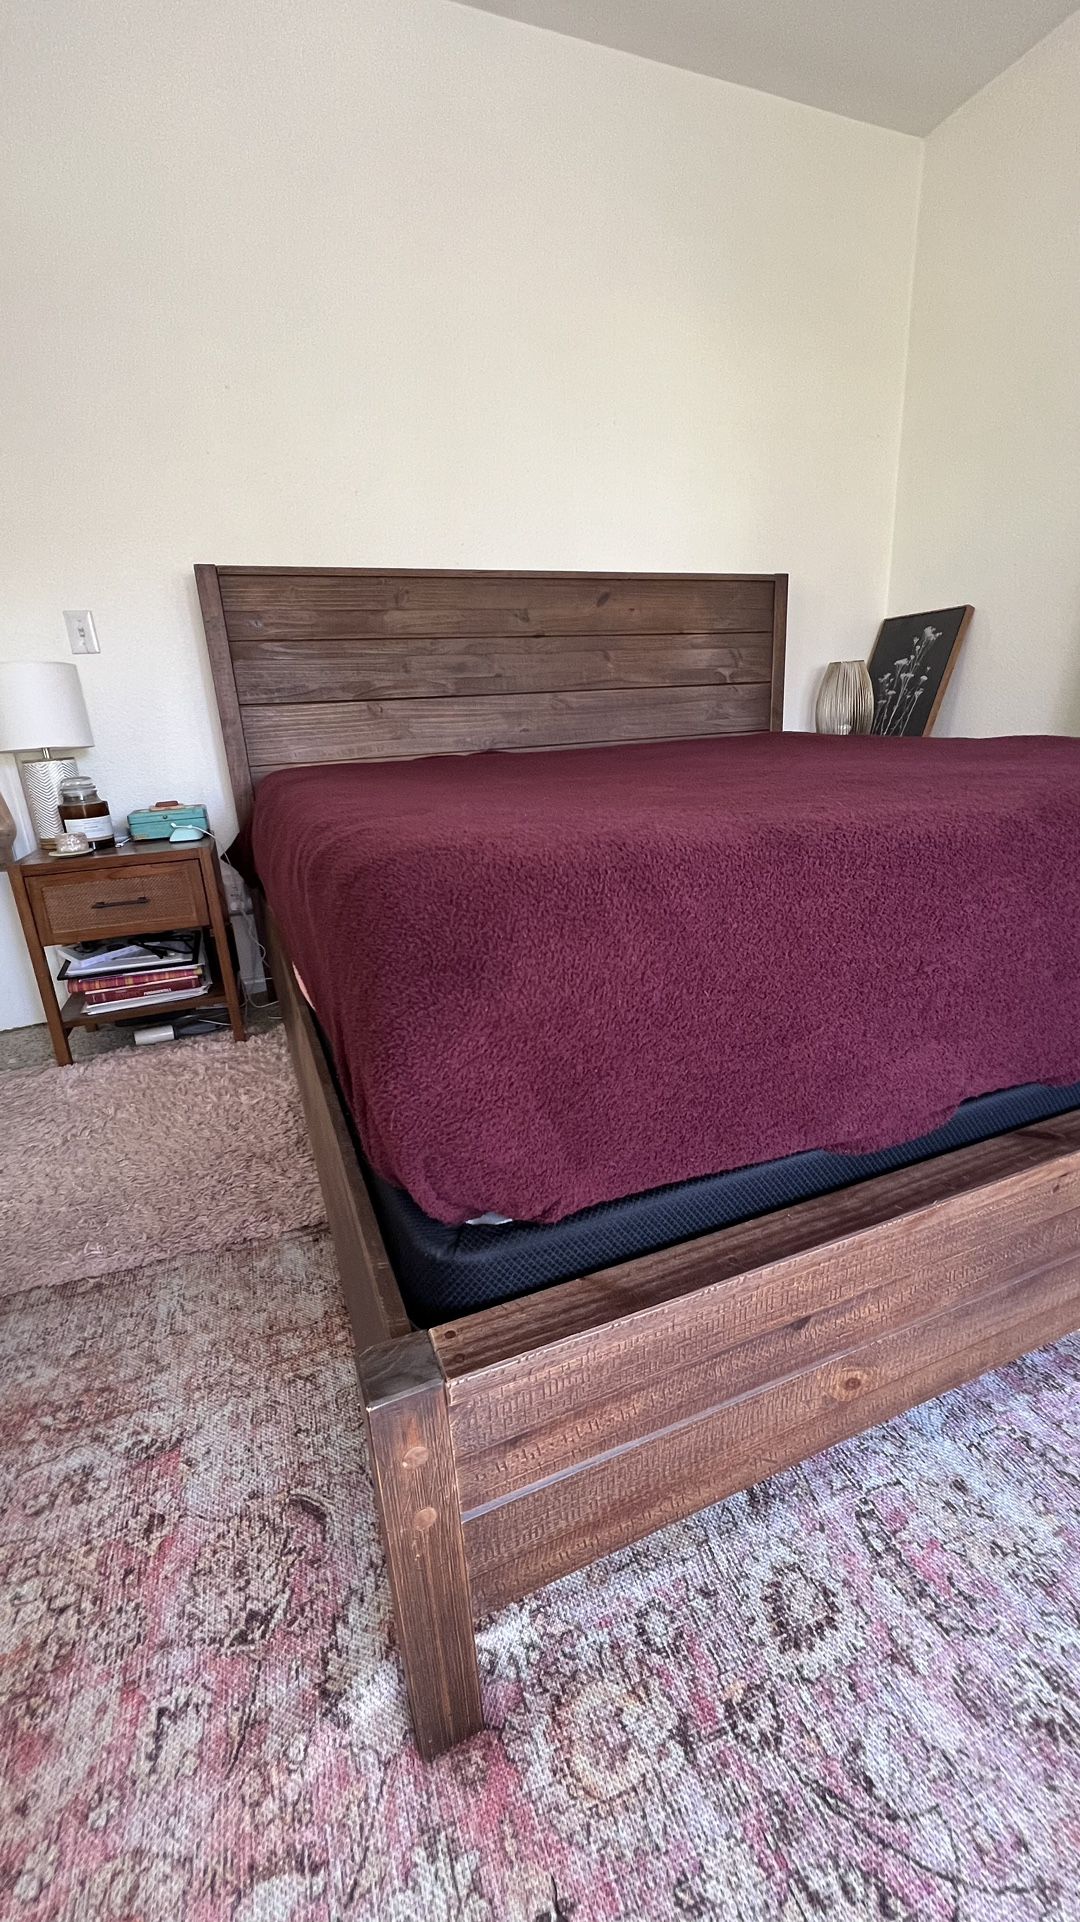 King Bed Frame - Wooden